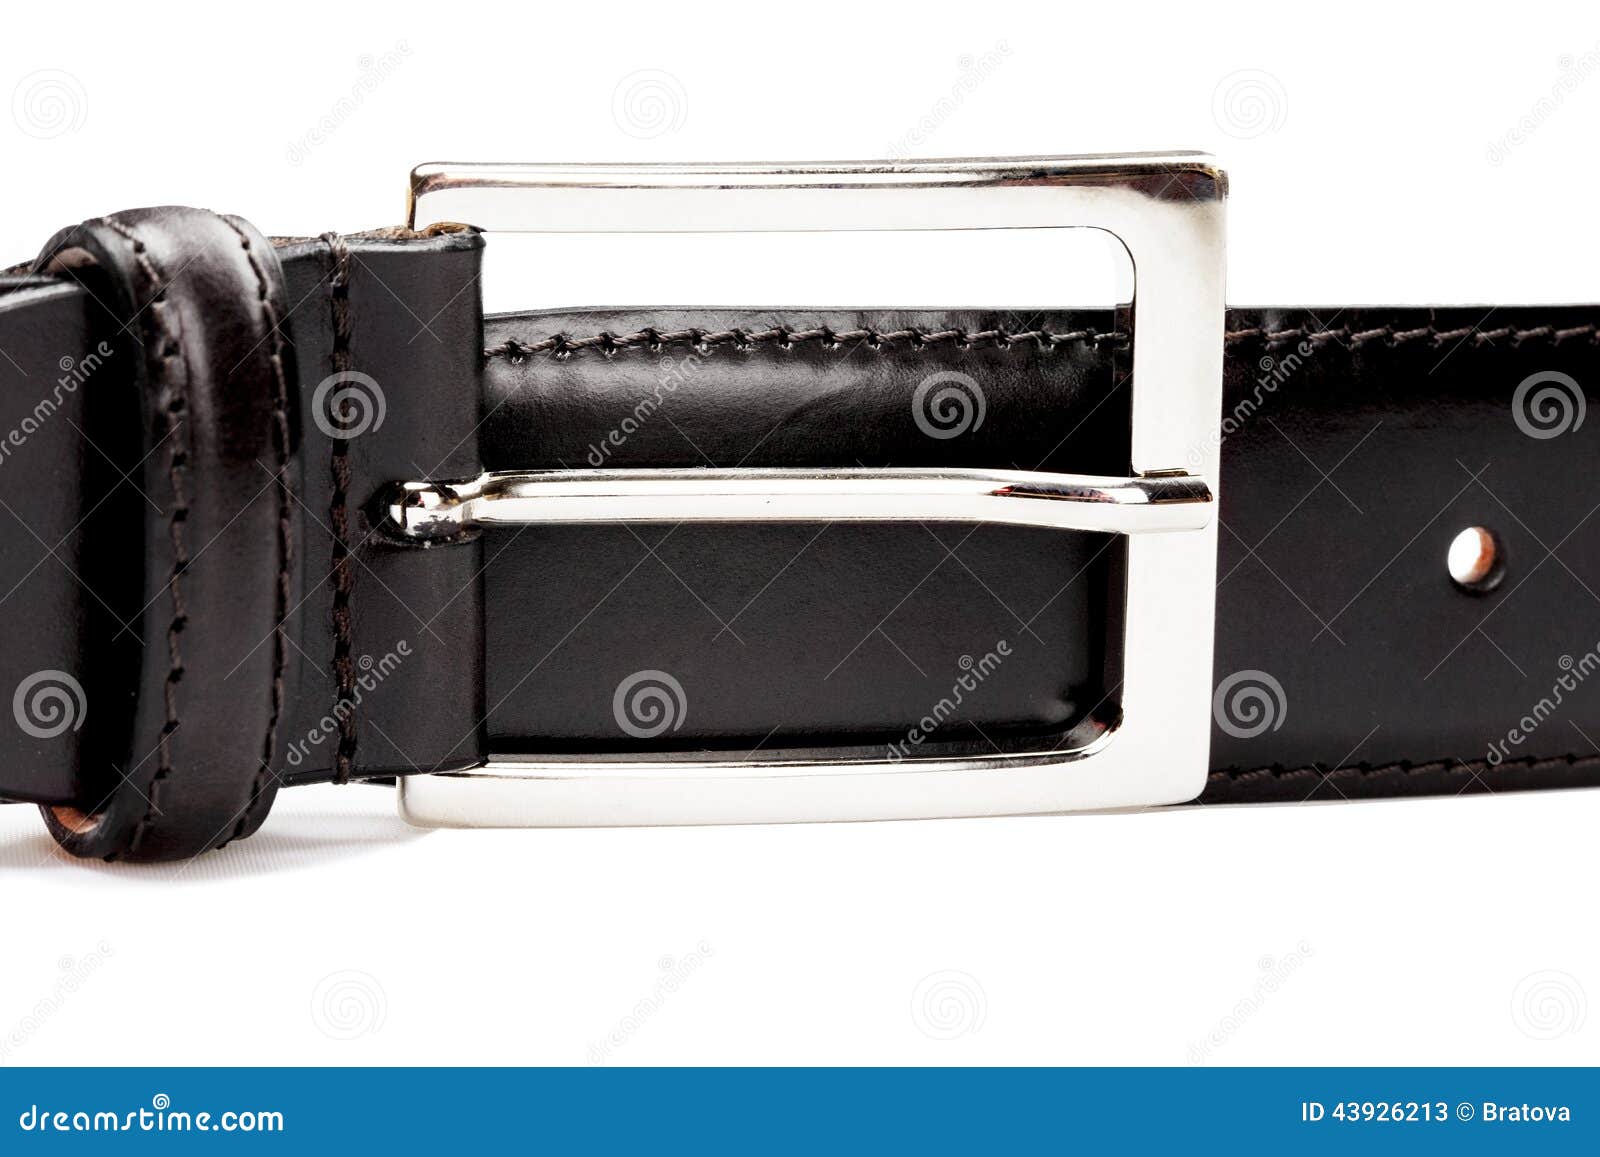 Belt buckle stock image. Image of black, badge, strap - 43926213